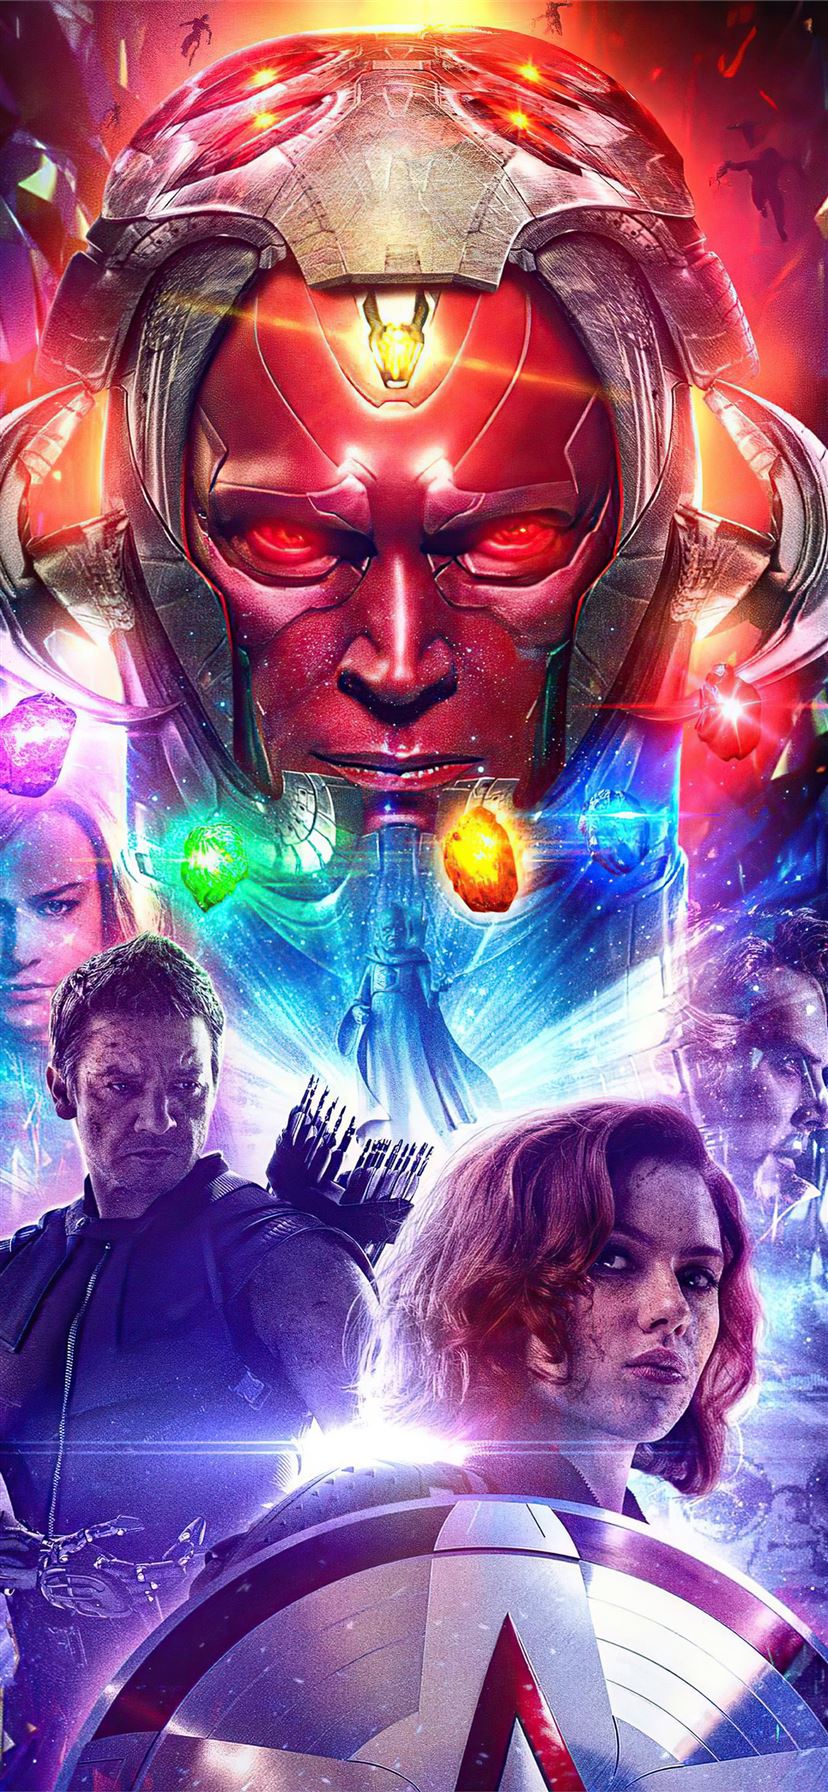 Bộ sưu tập hình nền Marvel dành riêng cho iPhone có độ phân giải 4K miễn phí cho bạn tải xuống. Thỏa mãn niềm đam mê siêu anh hùng với các biểu tượng được yêu thích như Thor, Captain America, Iron Man và rất nhiều nhân vật khác.